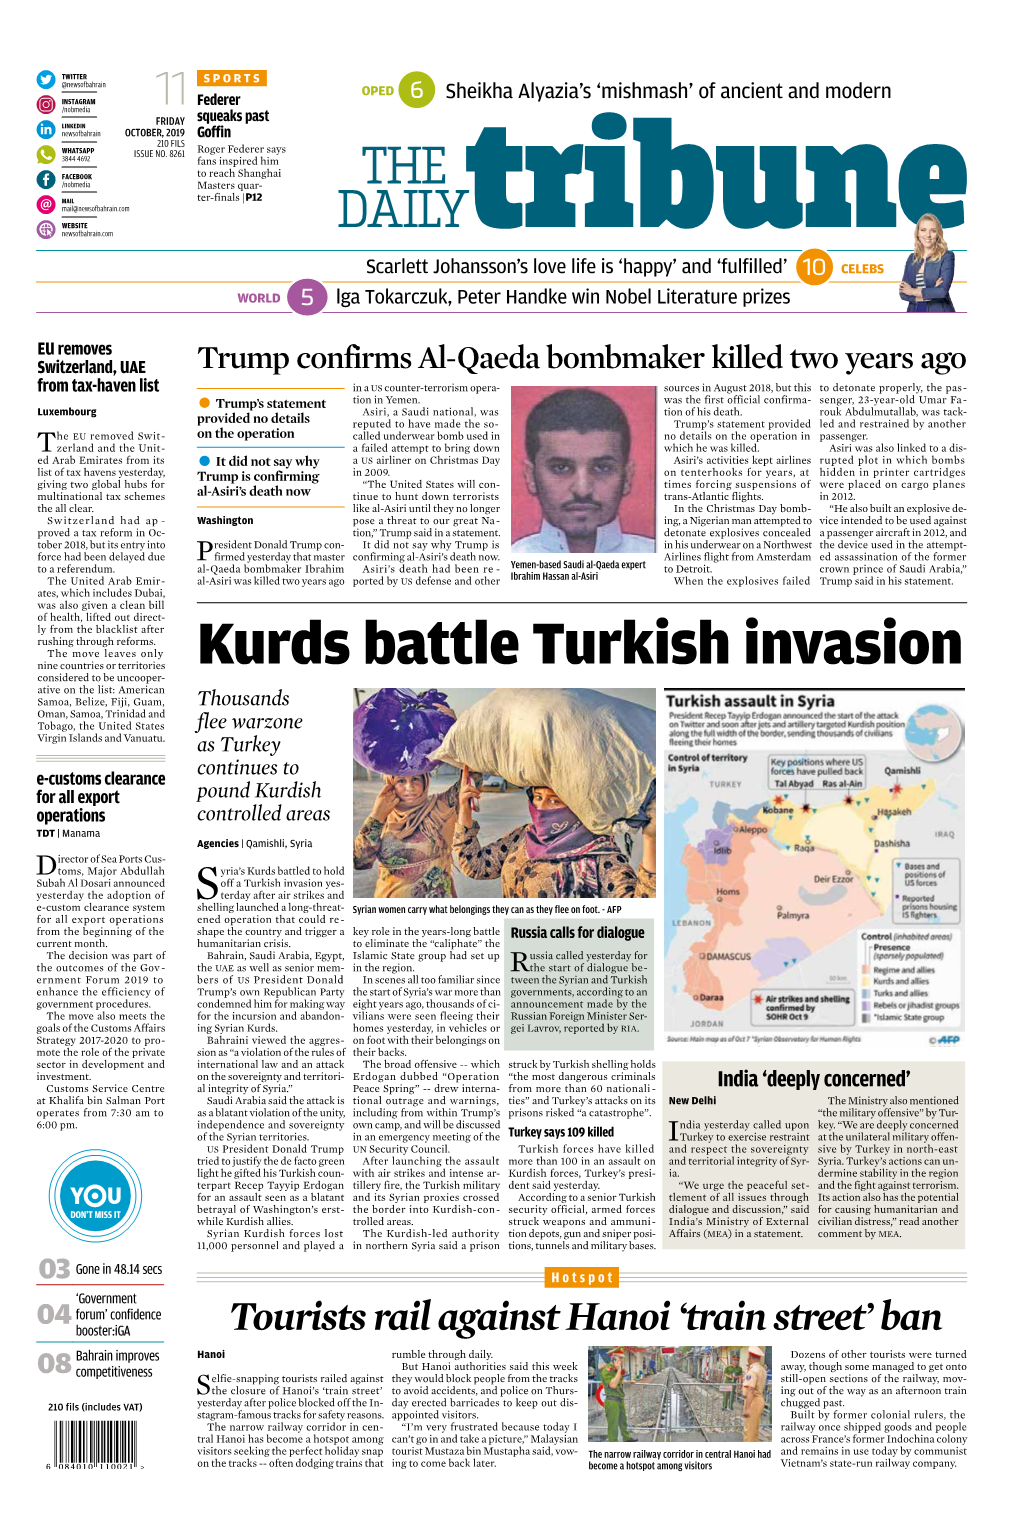 Kurds Battle Turkish Invasion